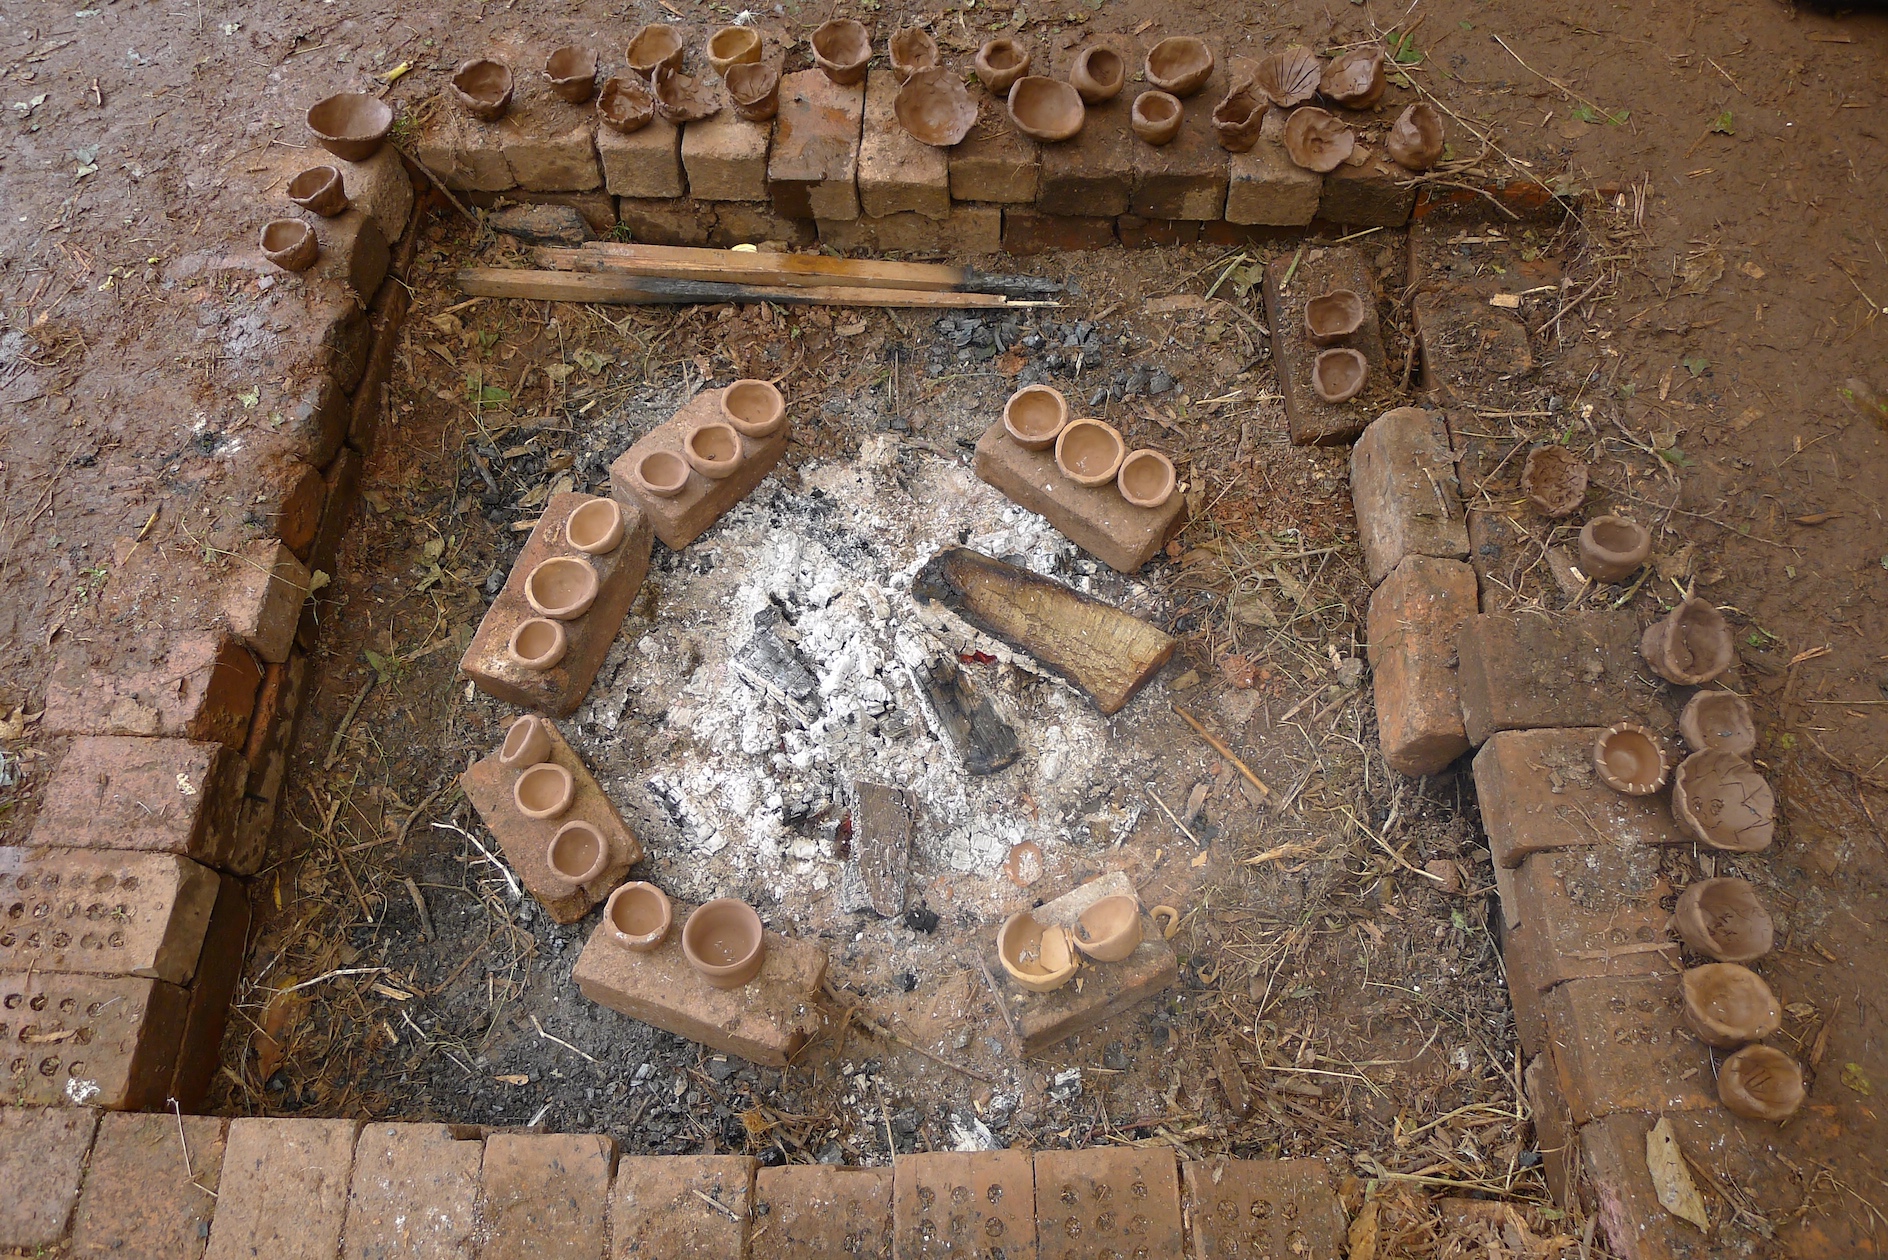 1.thumb pots drying to bone dry.jpg